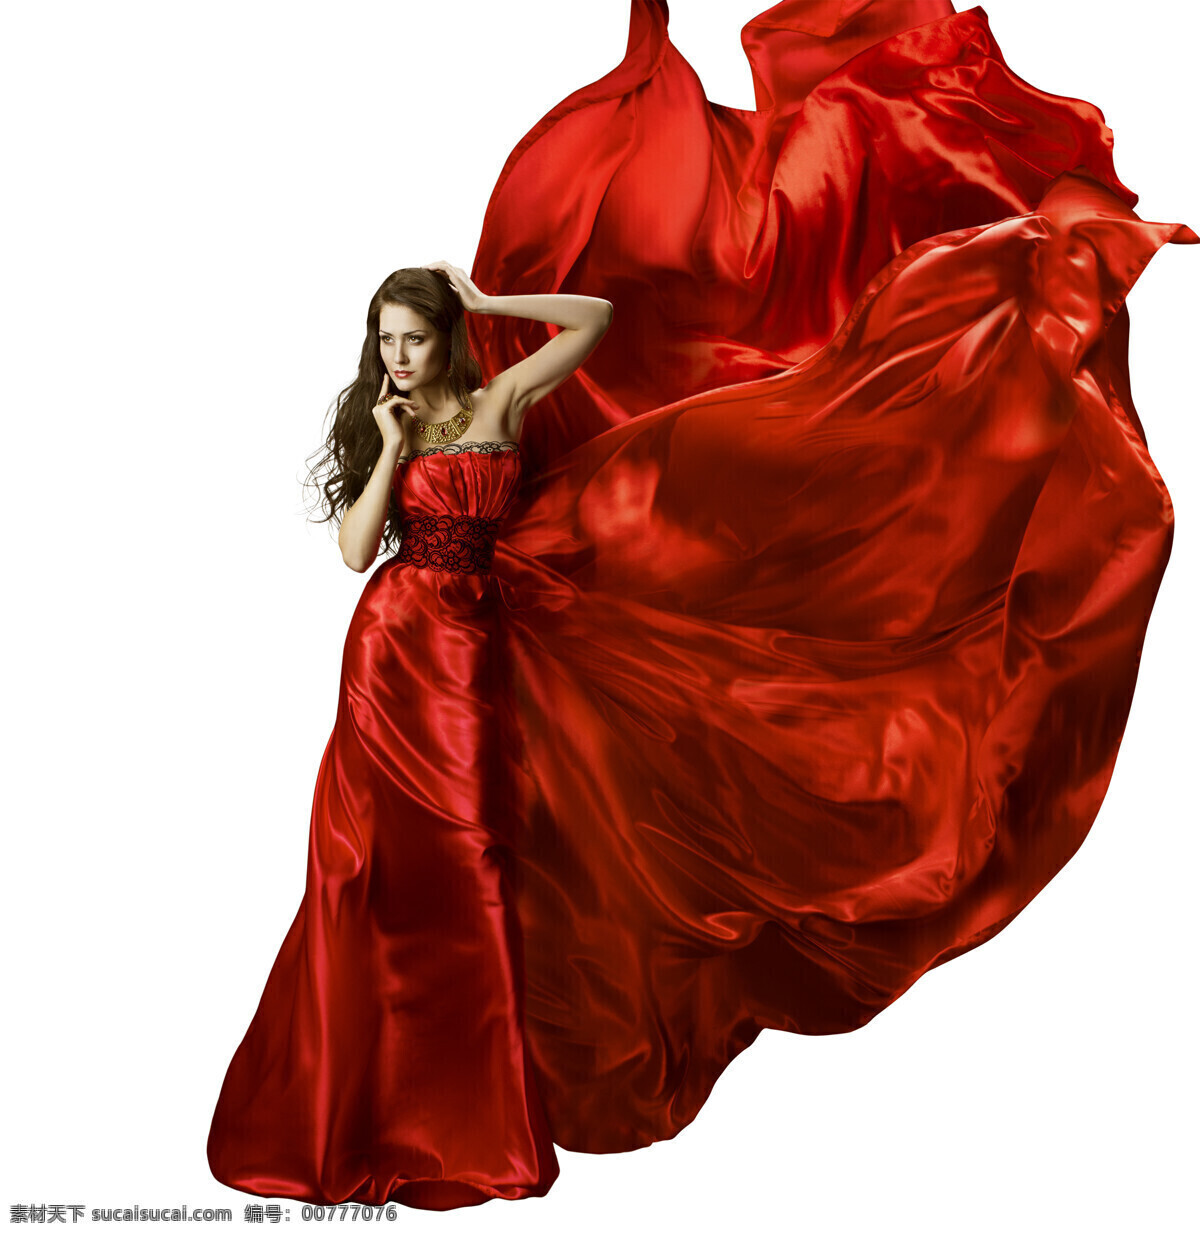 红绸飘逸美女 红绸 飘逸 美女 裙子 丝绸 舞蹈 女人 人物图库 职业人物